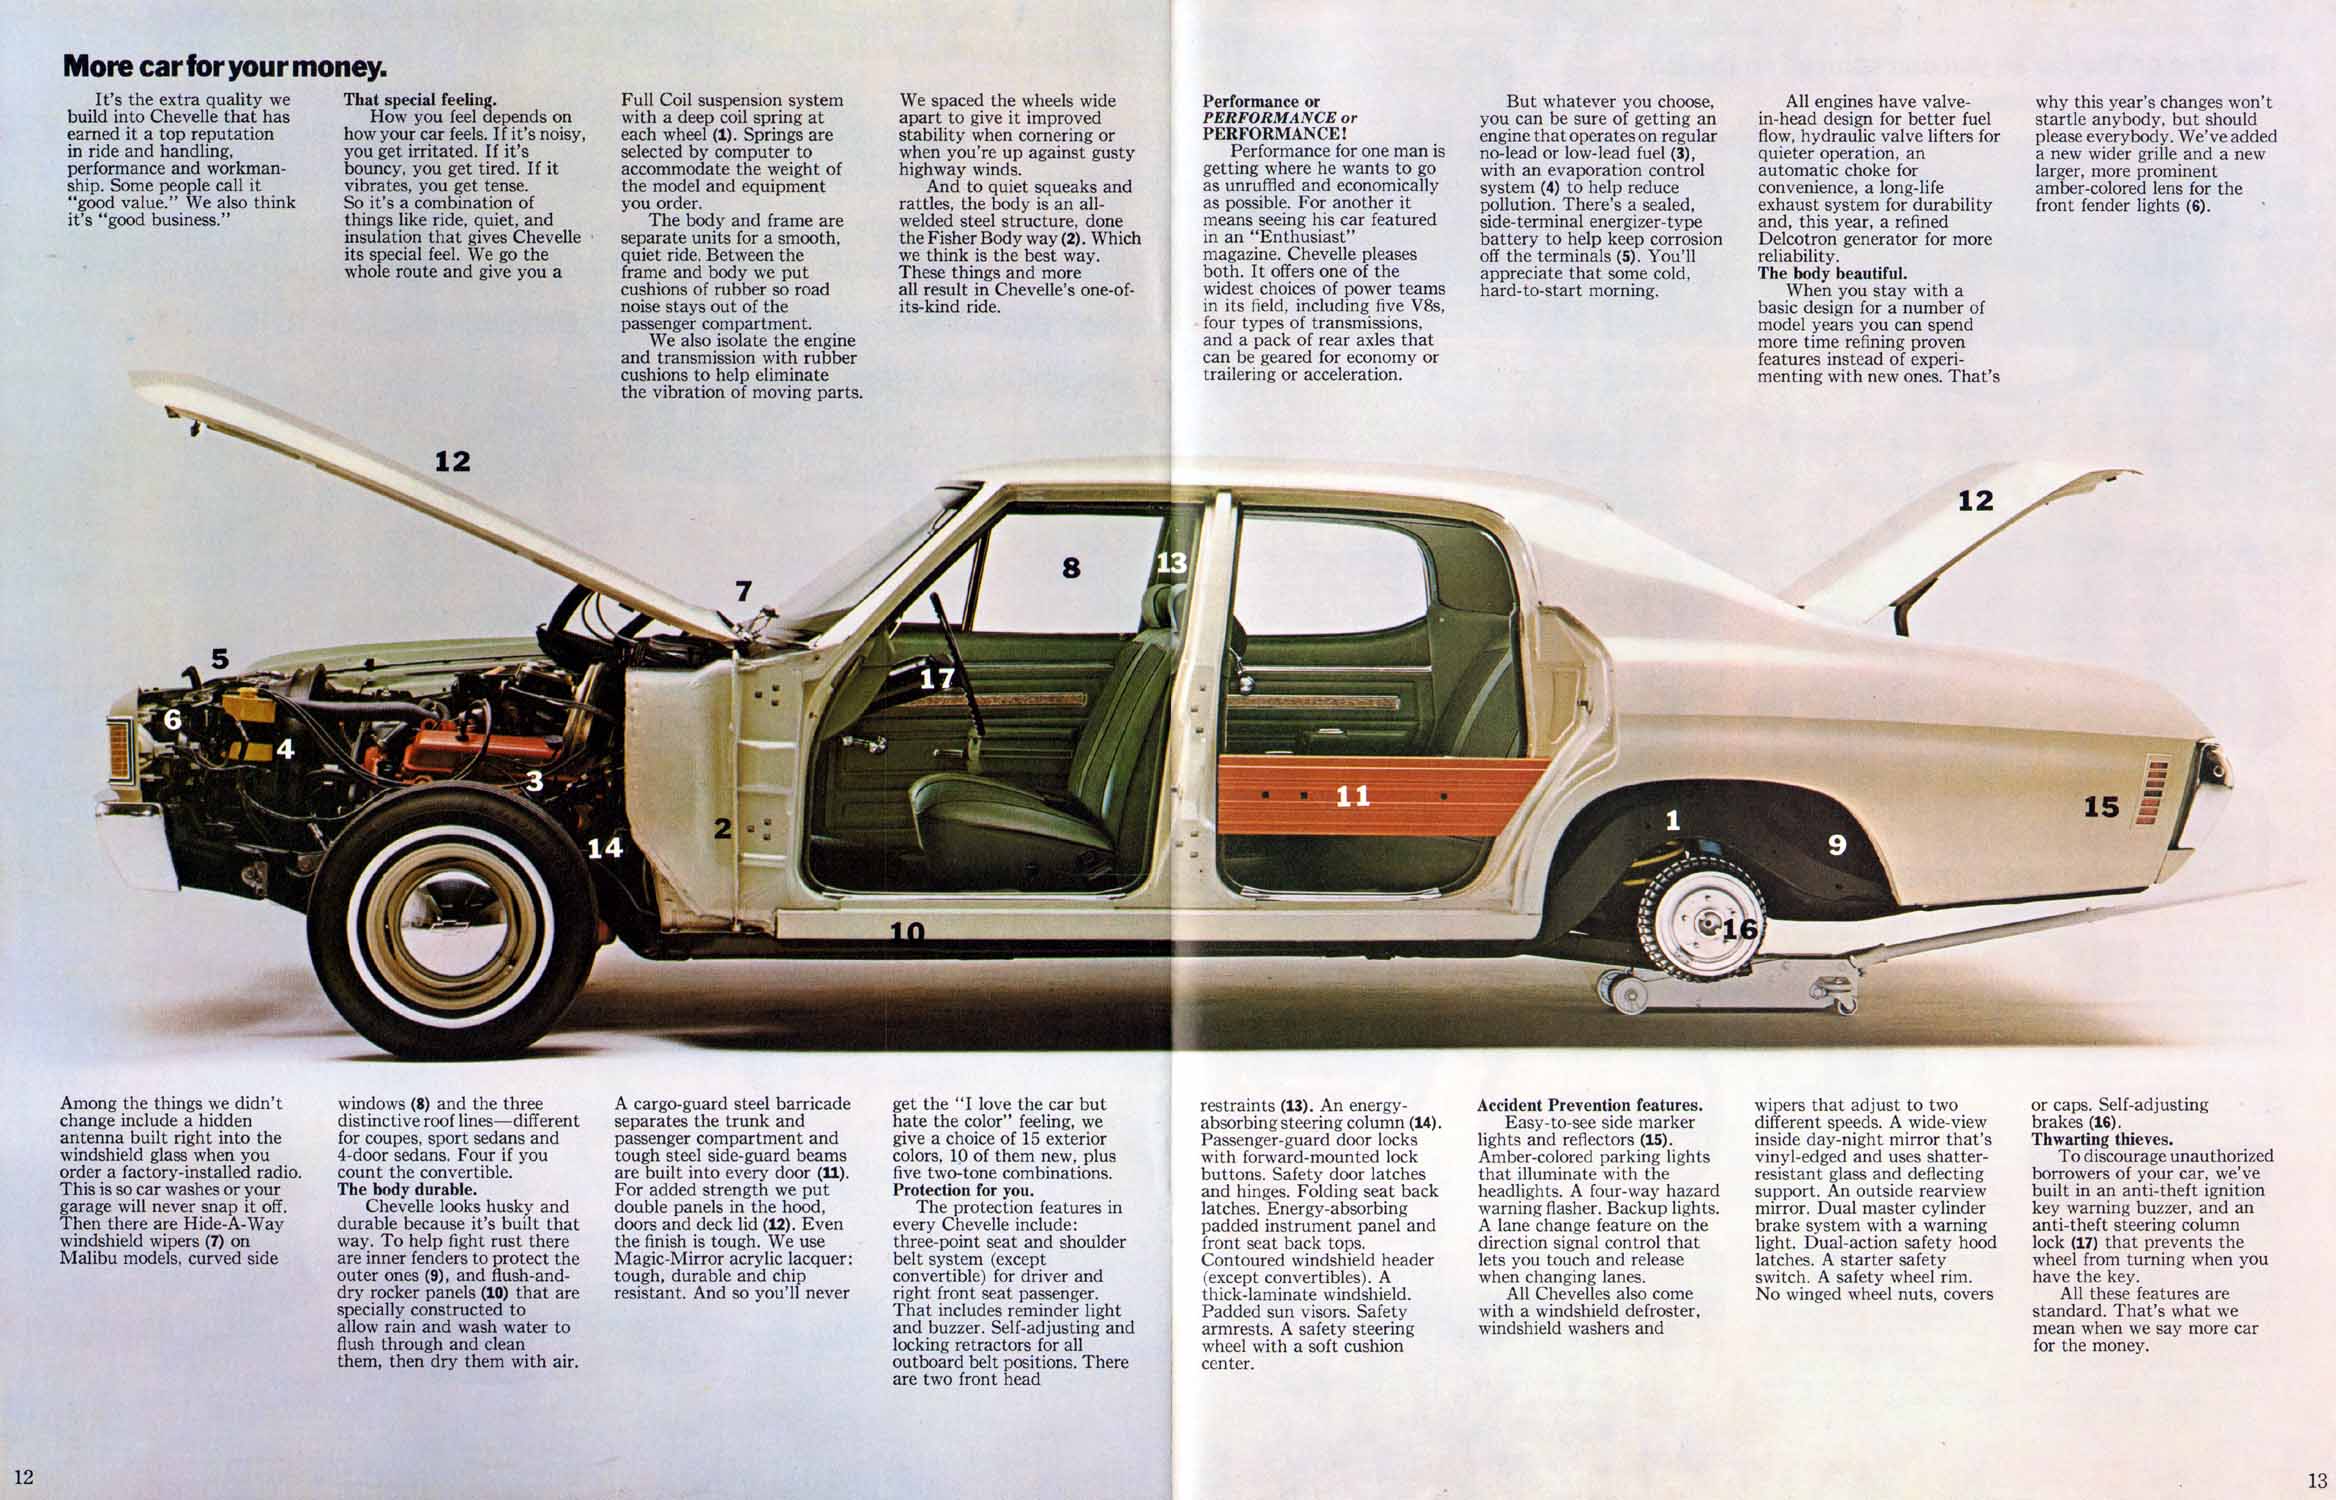 1972_Chevrolet_Chevelle_Rev1-12-13